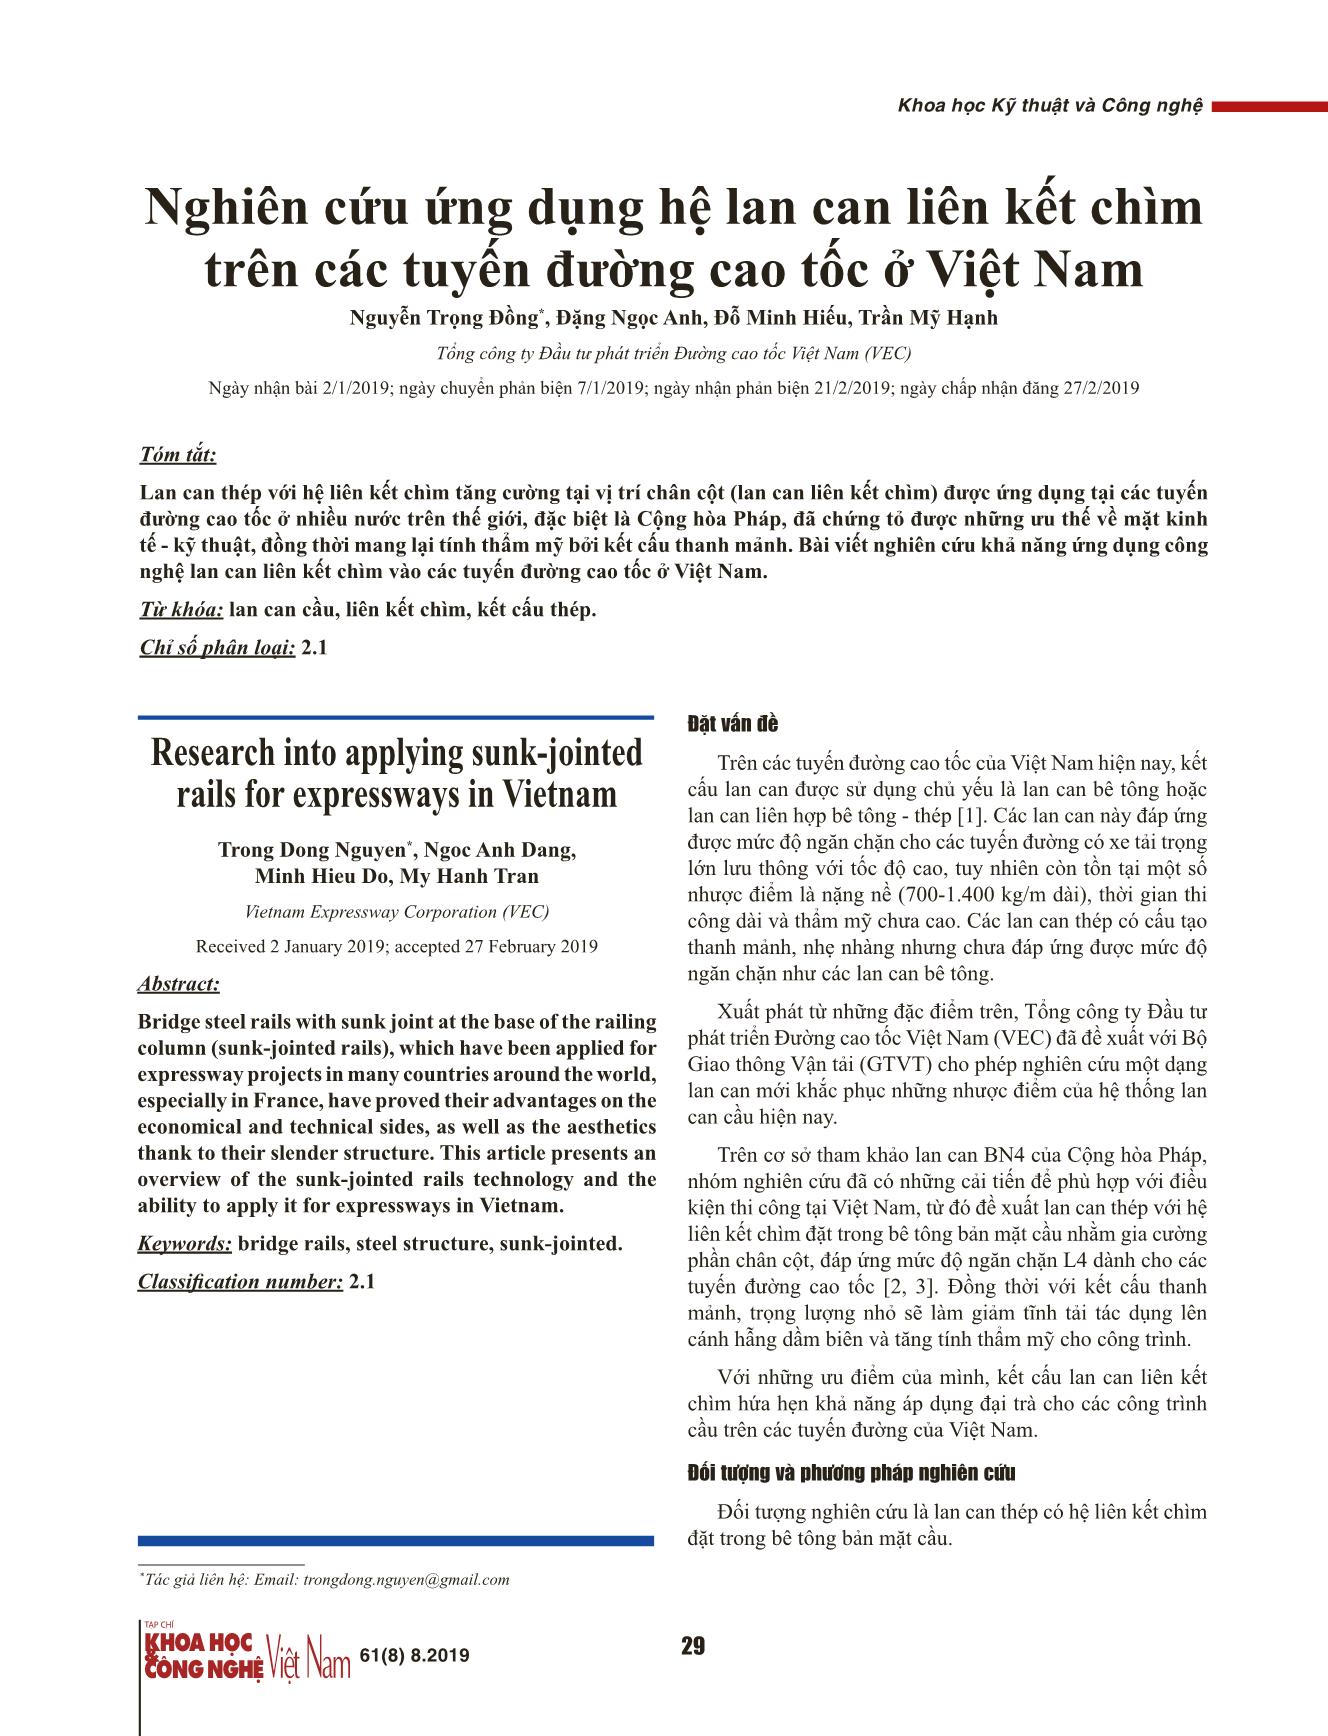 Nghiên cứu ứng dụng hệ lan can liên kết chìm trên các tuyến đường cao tốc ở Việt Nam trang 1